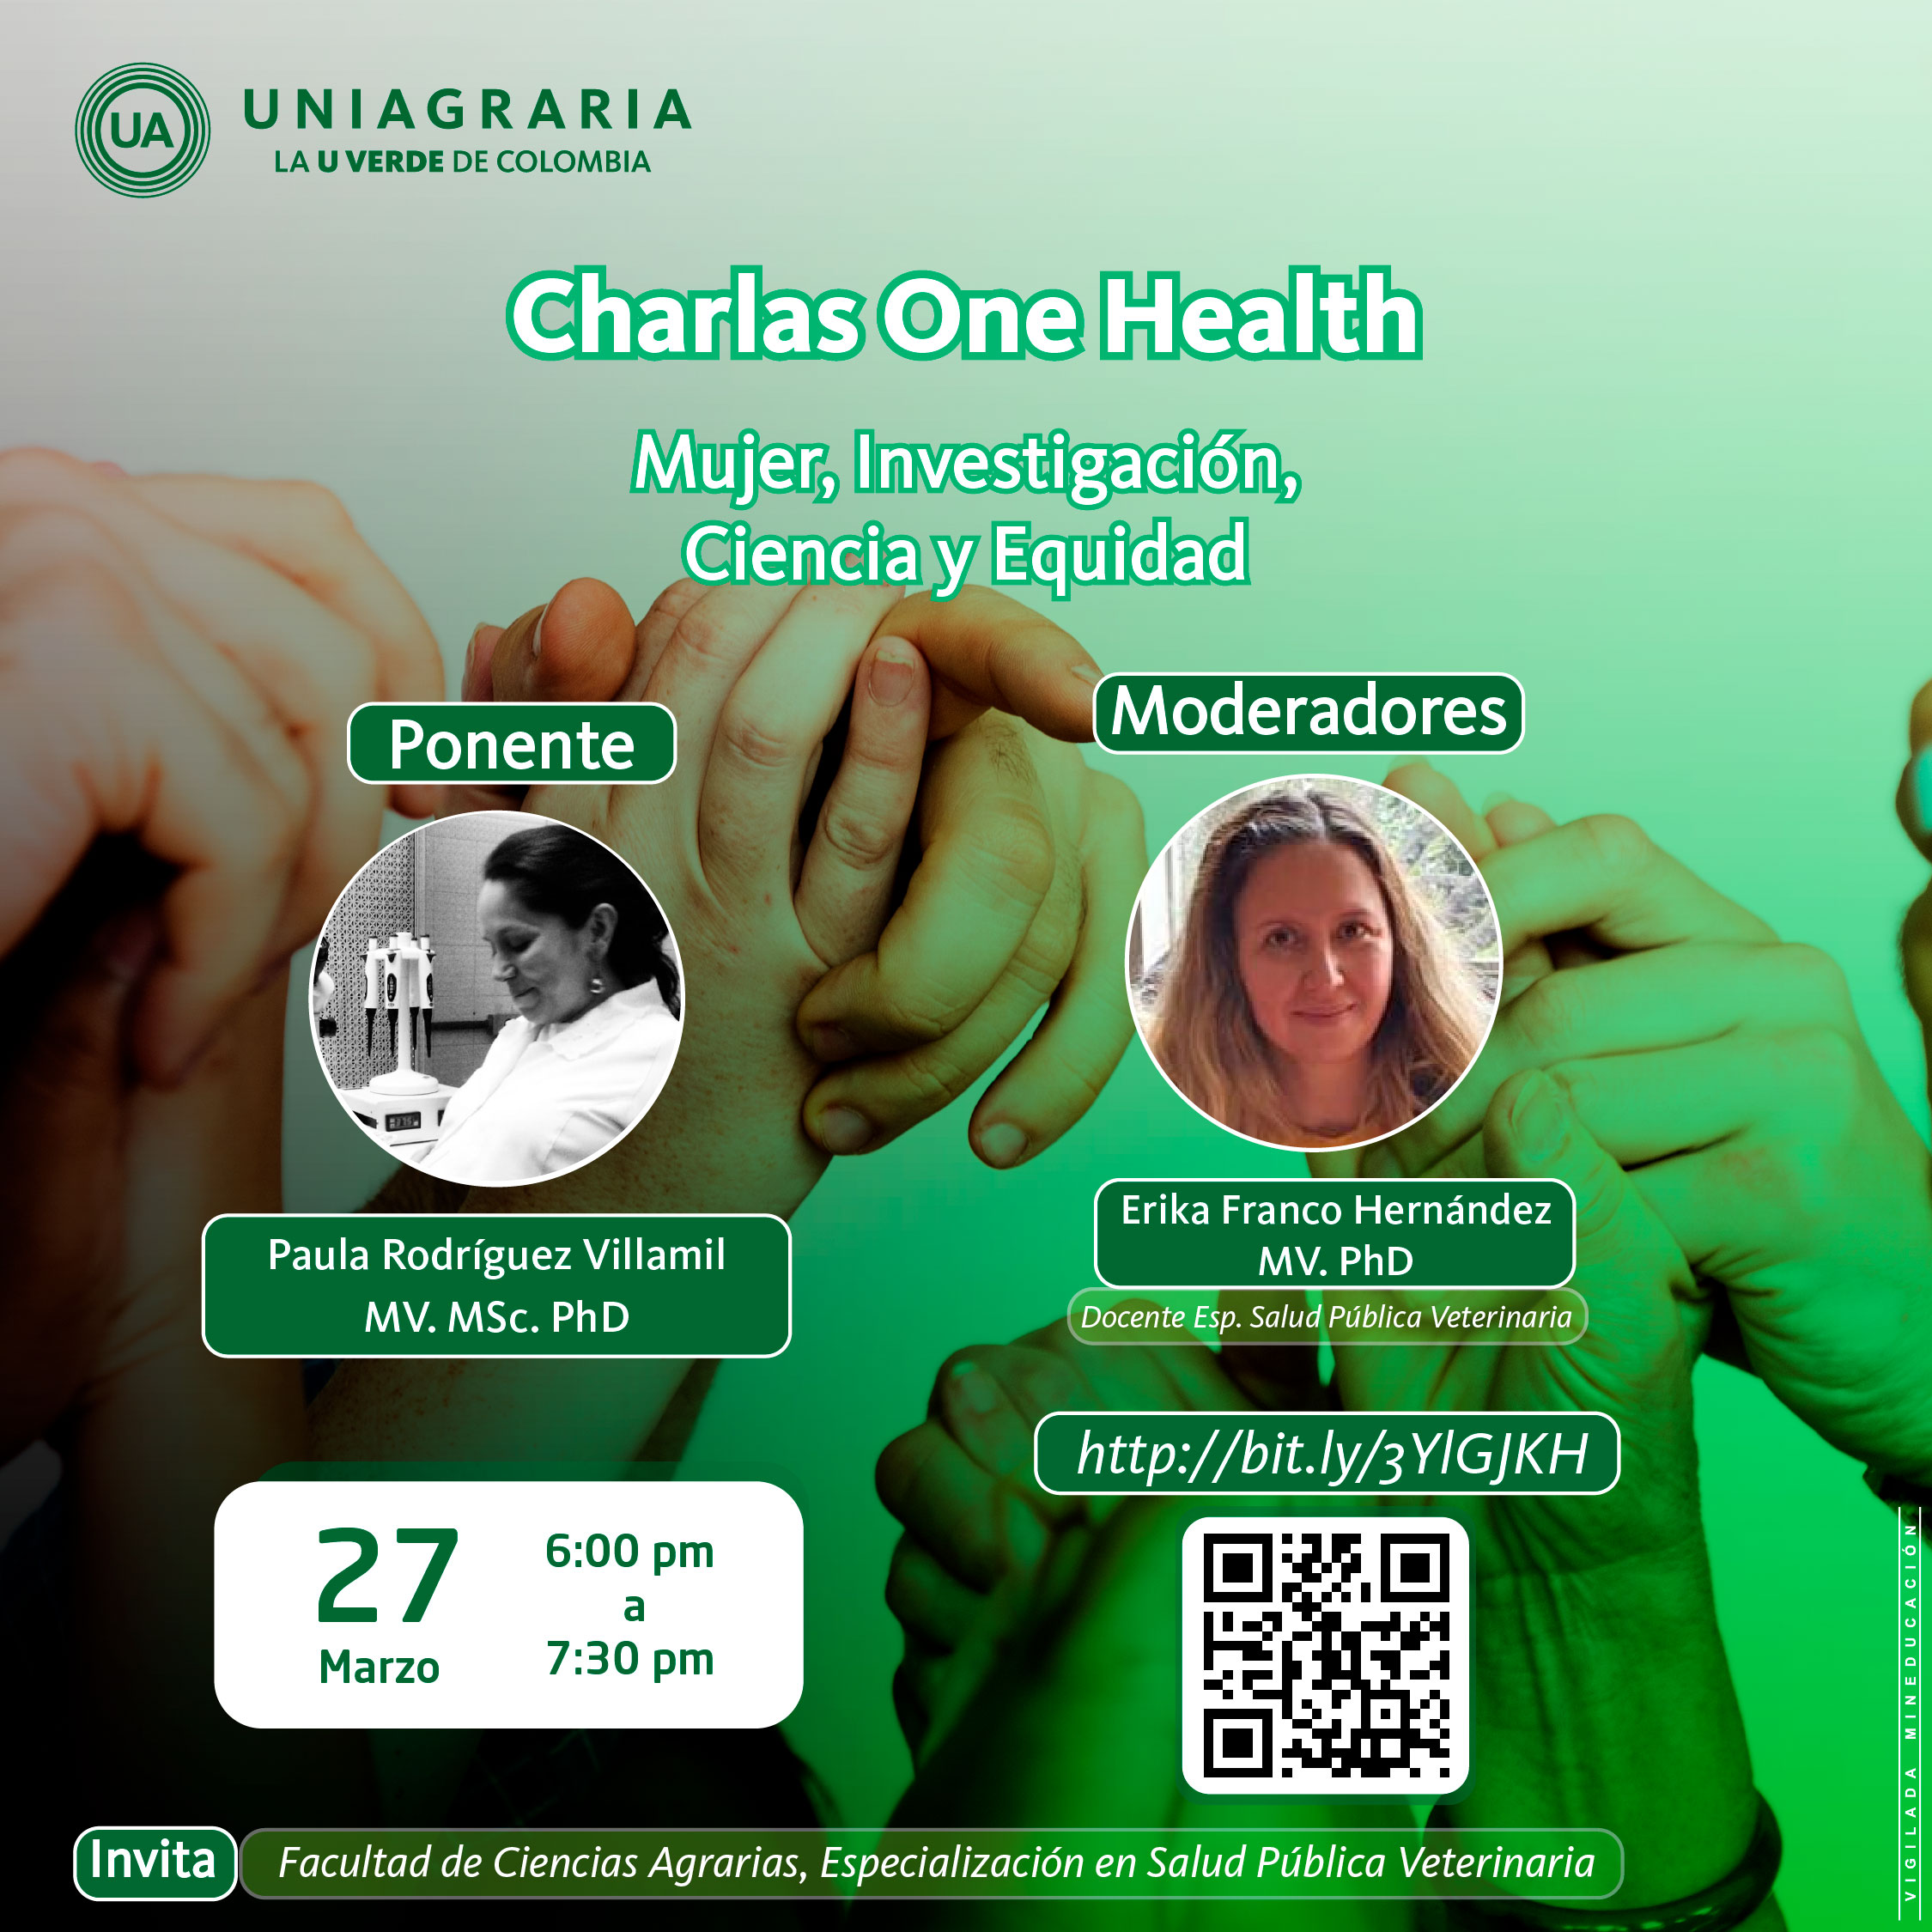 Charlas One Health: Mujer, Investigación, Ciencia y Equidad